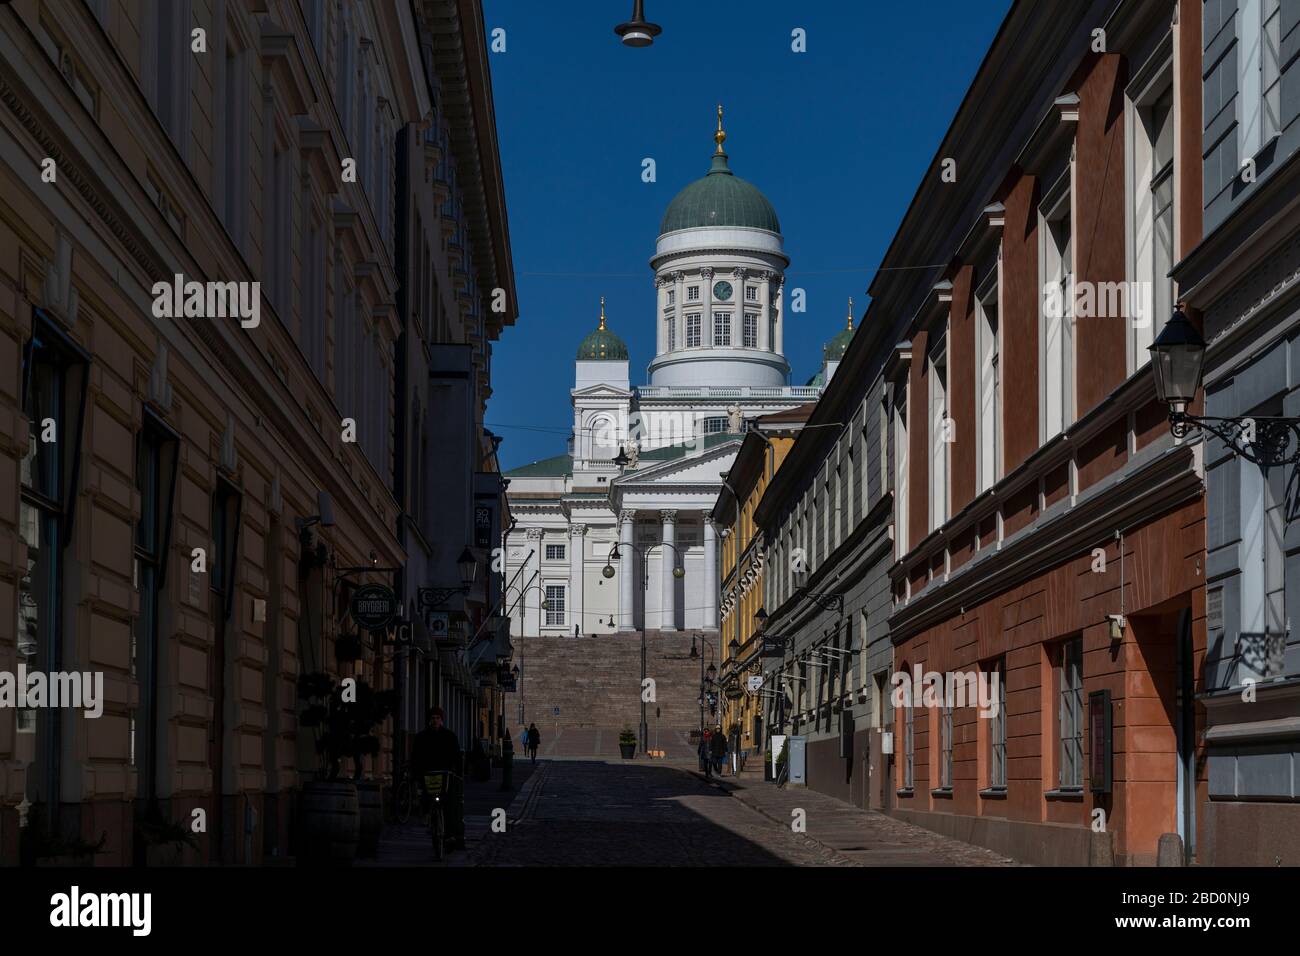 Die Kathedrale von Helsinki ist ein Wahrzeichen der Stadt. Normalerweise ist es voller Touristen, aber aufgrund der Coronavirus Pandemie ist die Nachbarschaft praktisch leer. Stockfoto